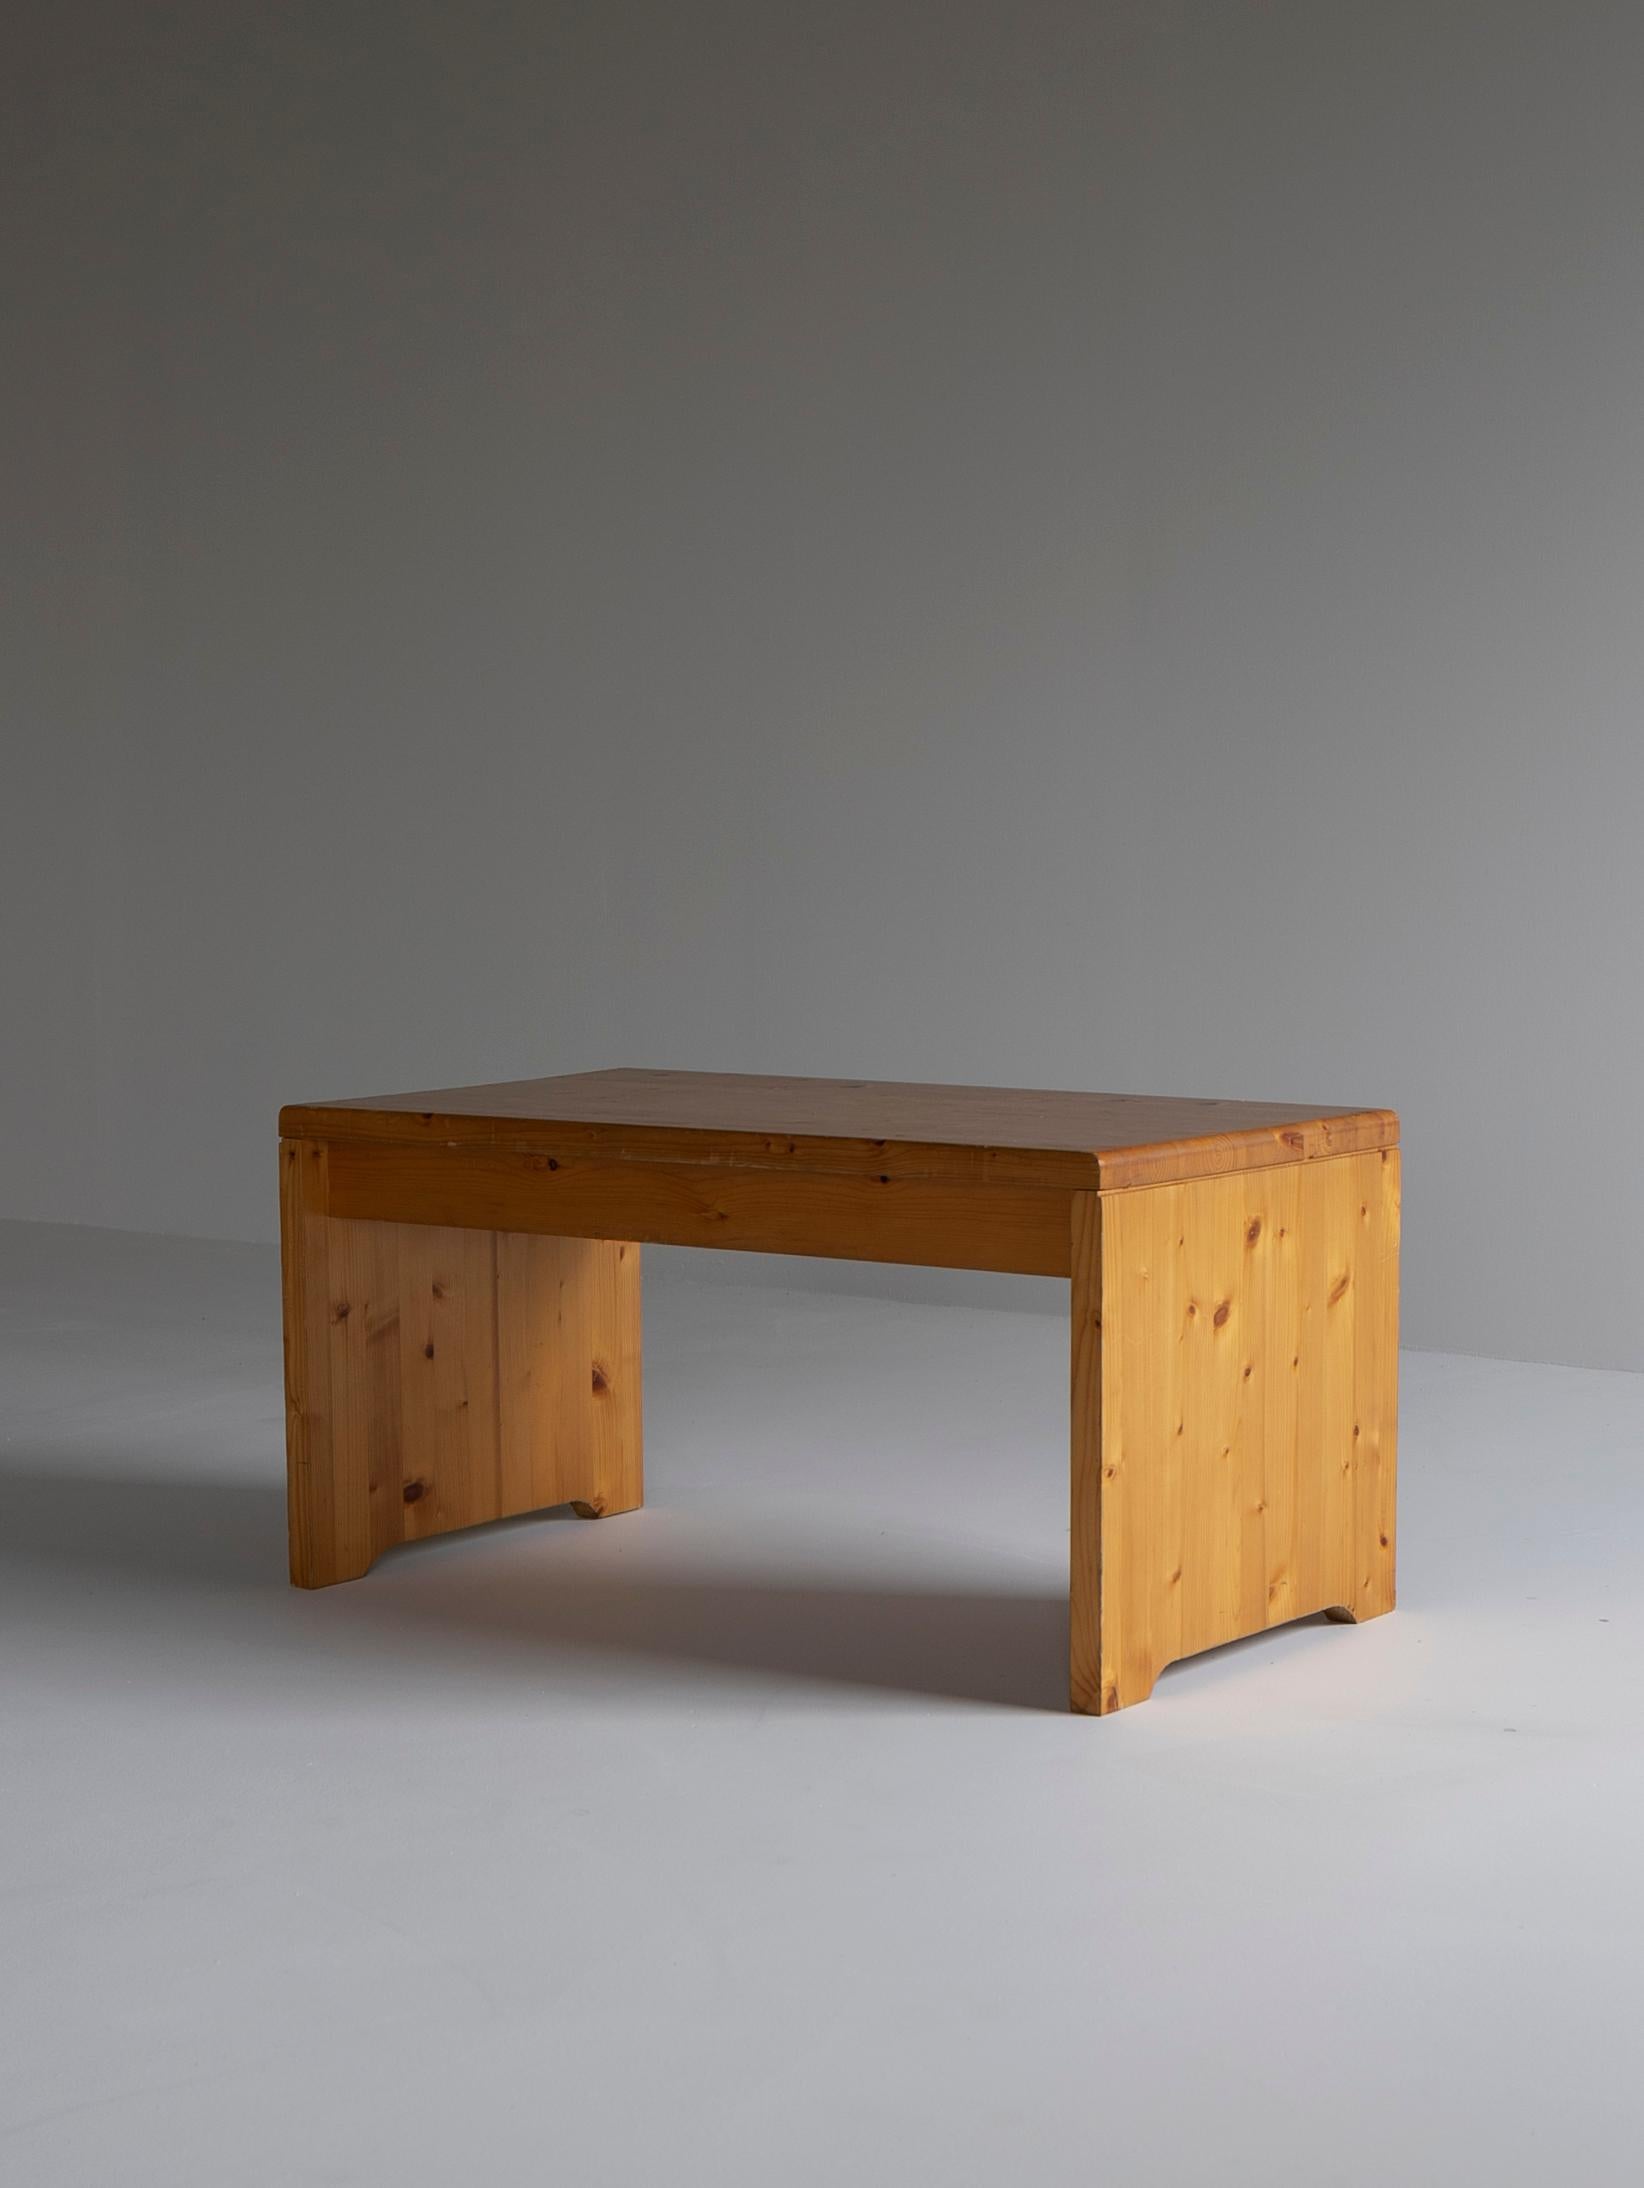 Niedriger Tisch, verwendet in Les Arcs 1600.
Dieses Stück wurde für Les Arcs 1600 entworfen, eines der wichtigsten Werke von Charlotte Perriand.
Das MATERIAL ist aus Zirbenholz gefertigt.
Kann als niedriger Tisch oder als Bank verwendet werden.